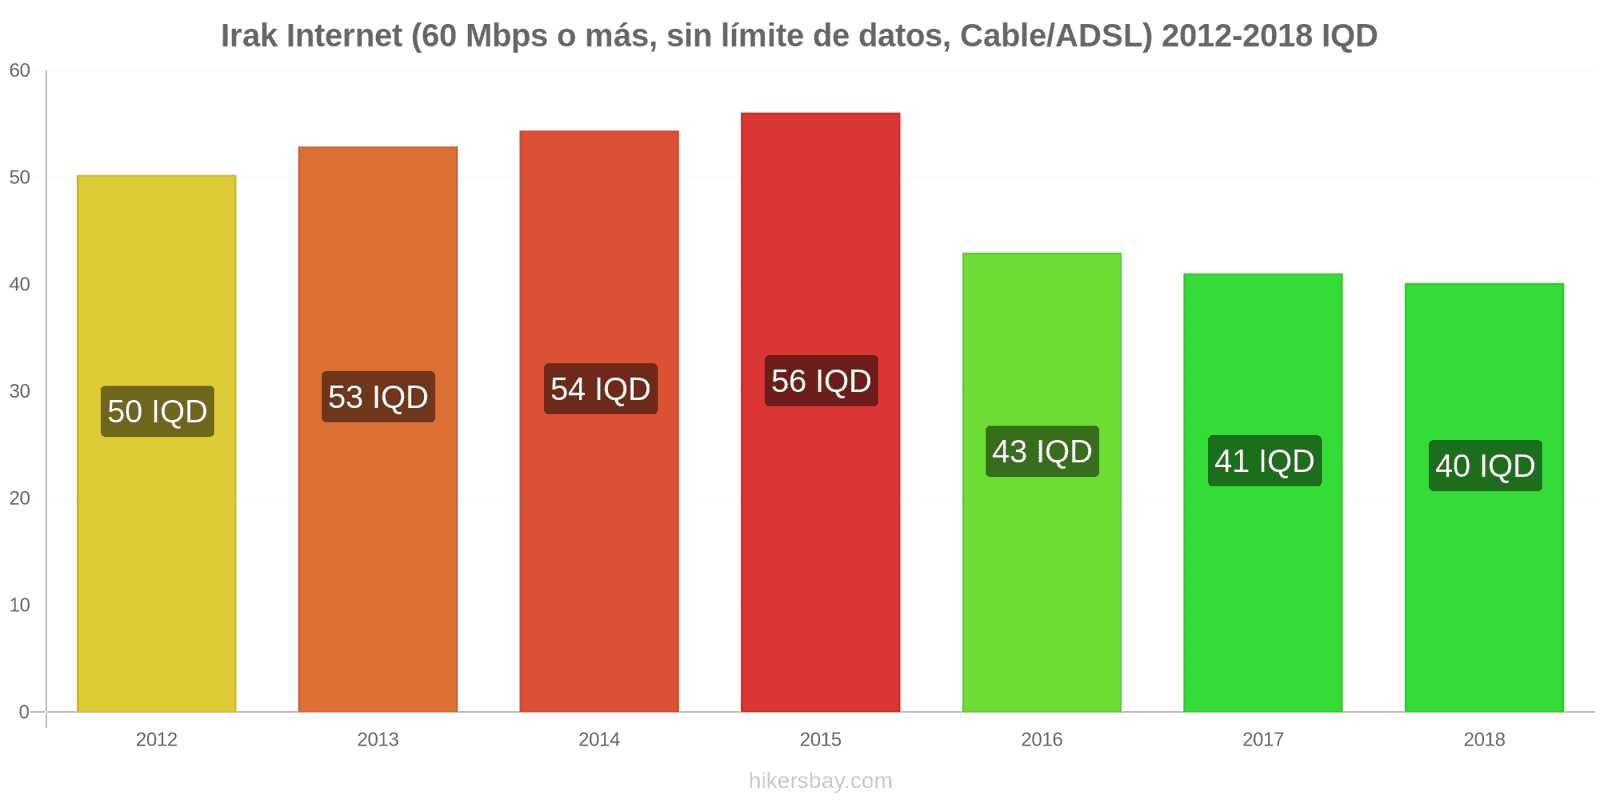 Irak cambios de precios Internet (60 Mbps o más, datos ilimitados, cable/ADSL) hikersbay.com